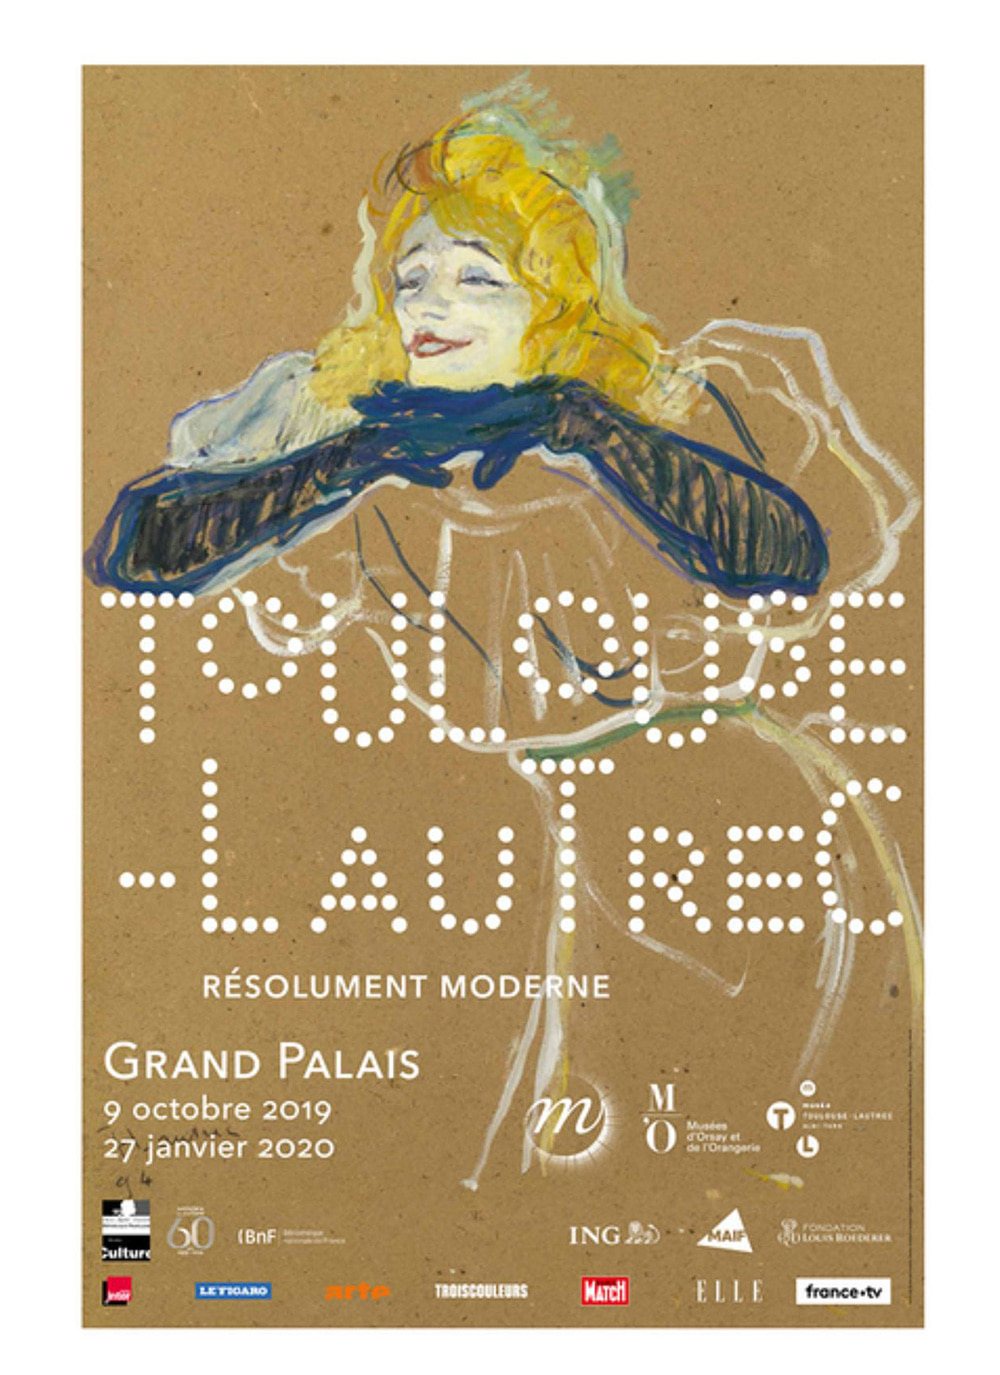 Exhibition poster - Toulouse-Lautrec